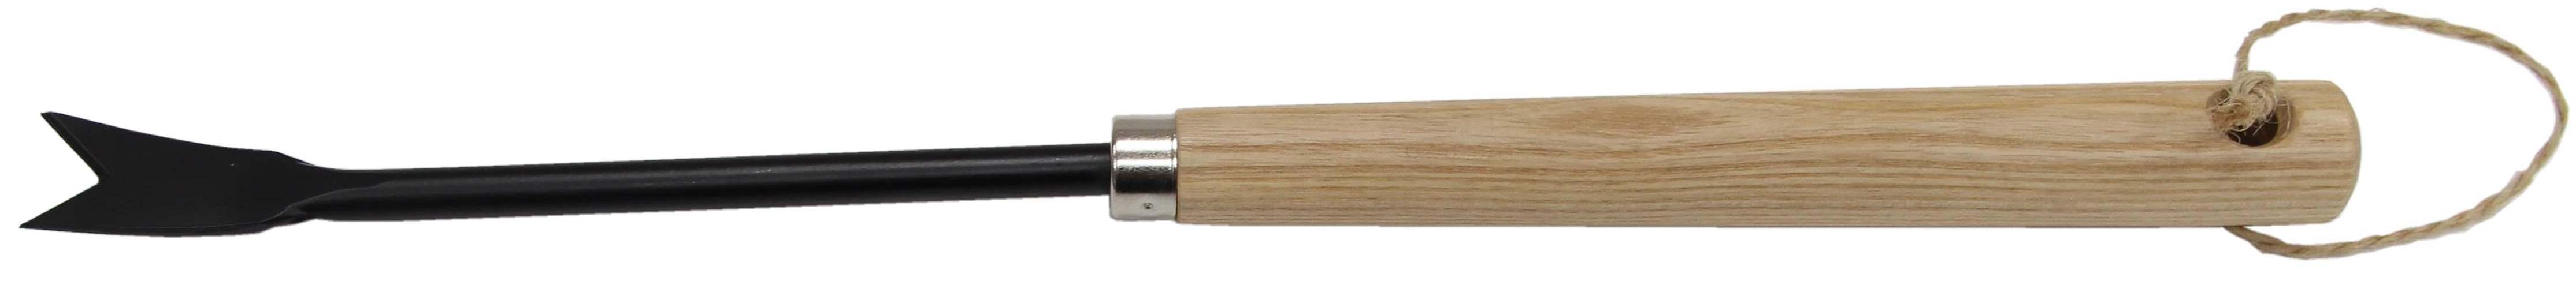 Weeder with ash wooden handle